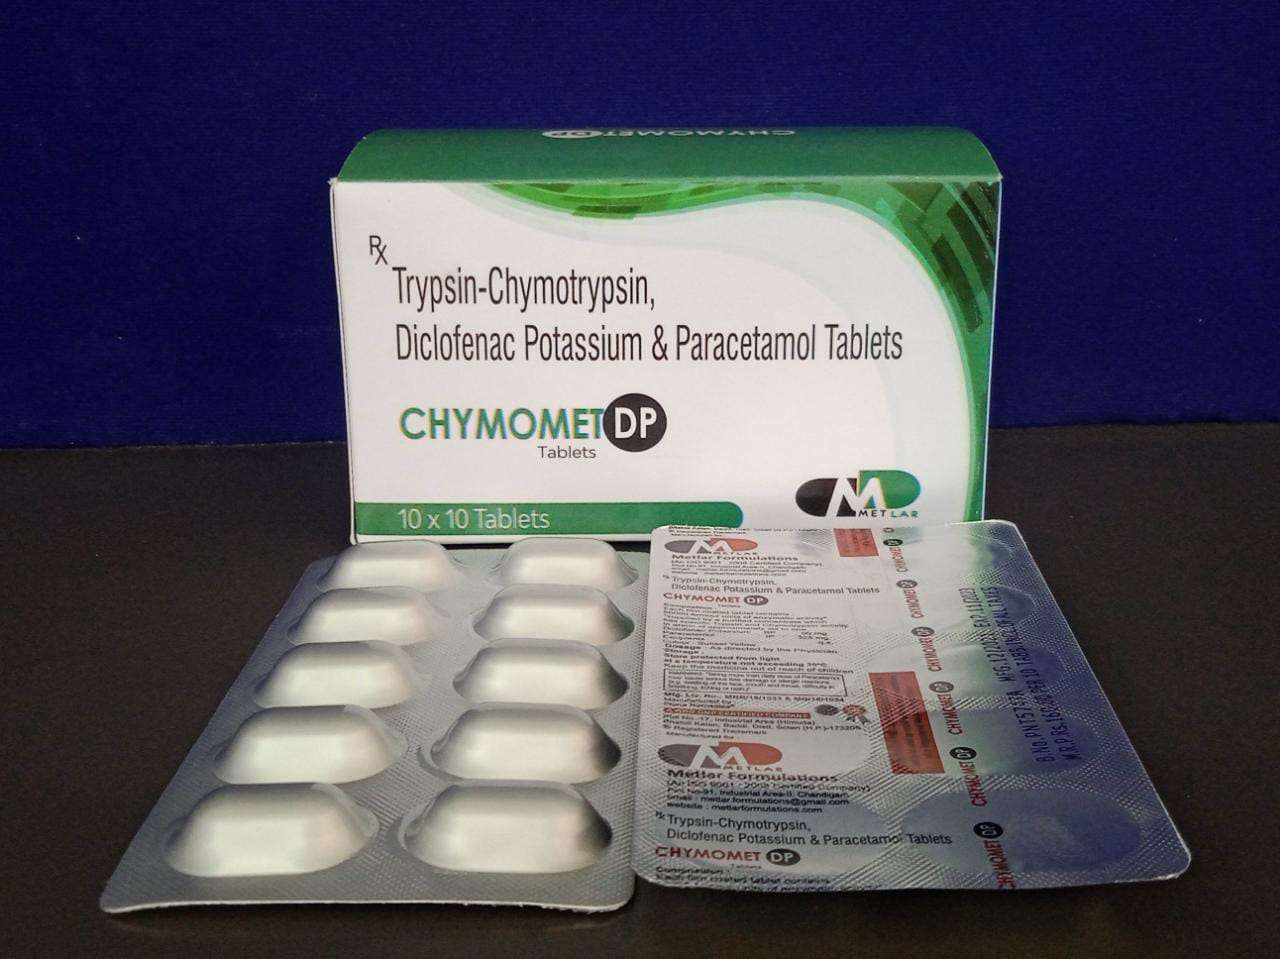 trypsin chymotrypsin 50000
+diclofenac50mg para 325mg